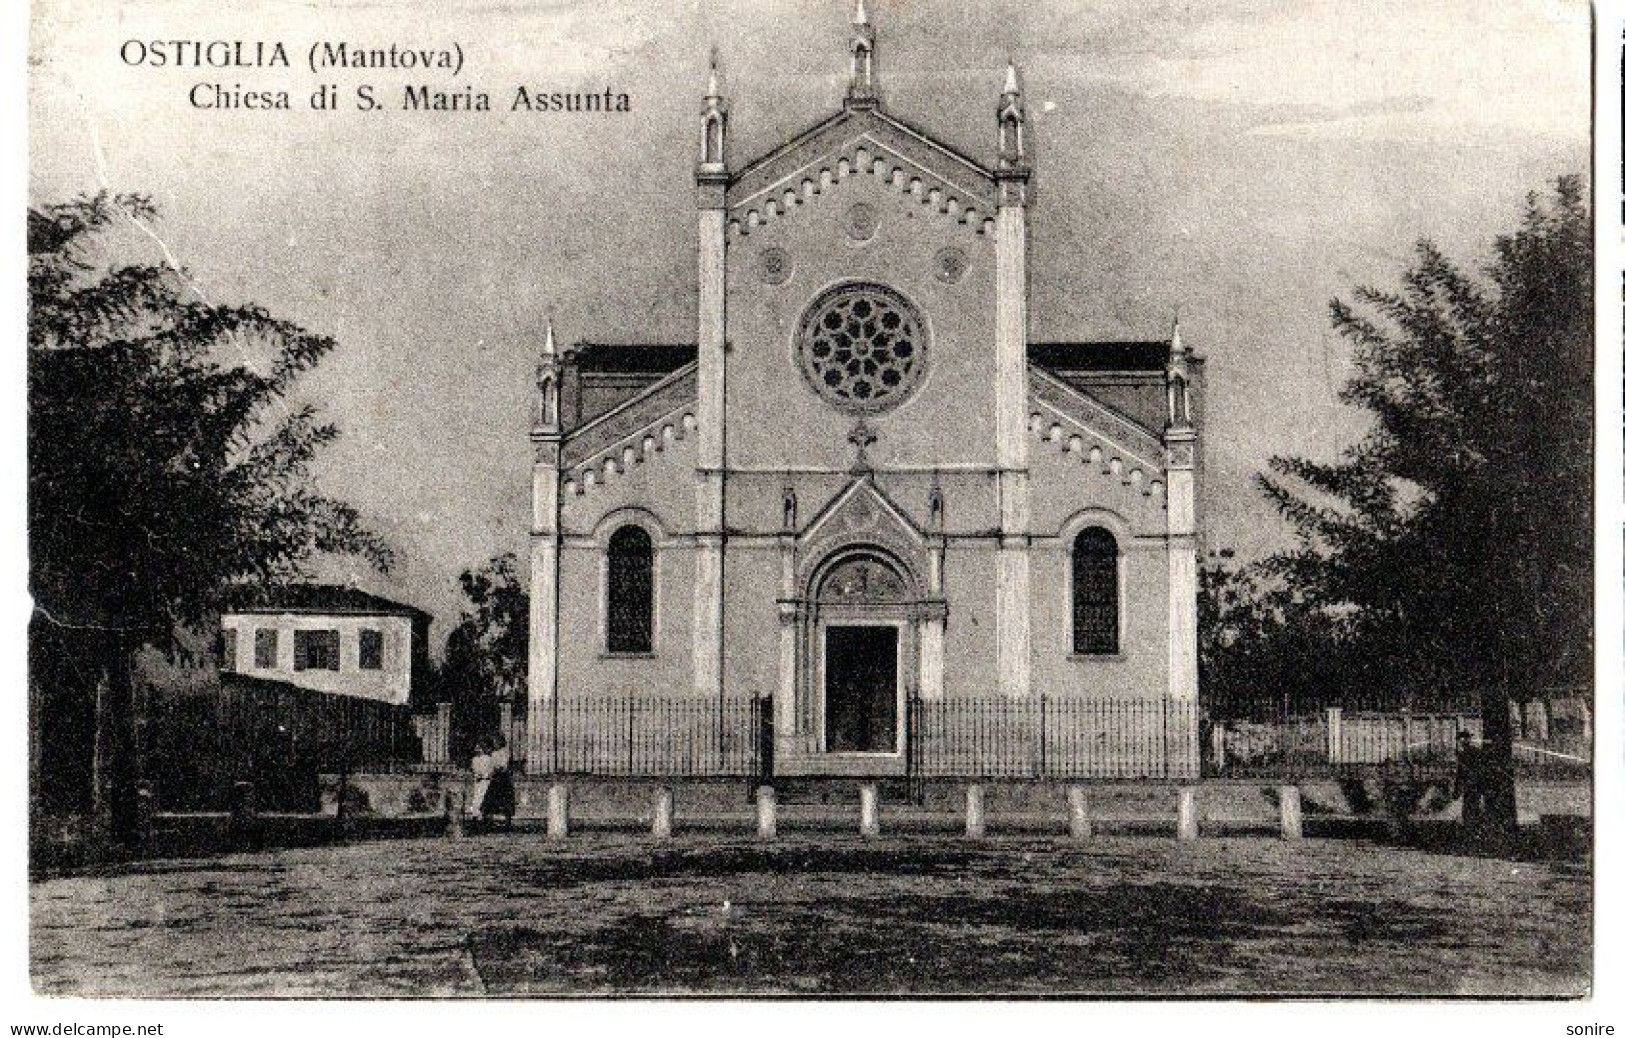 OSTIGLIA (MANTOVA) CHIESA DI S.MARIA ASSUNTA - VG 1917 FP - C0324 - Mantova